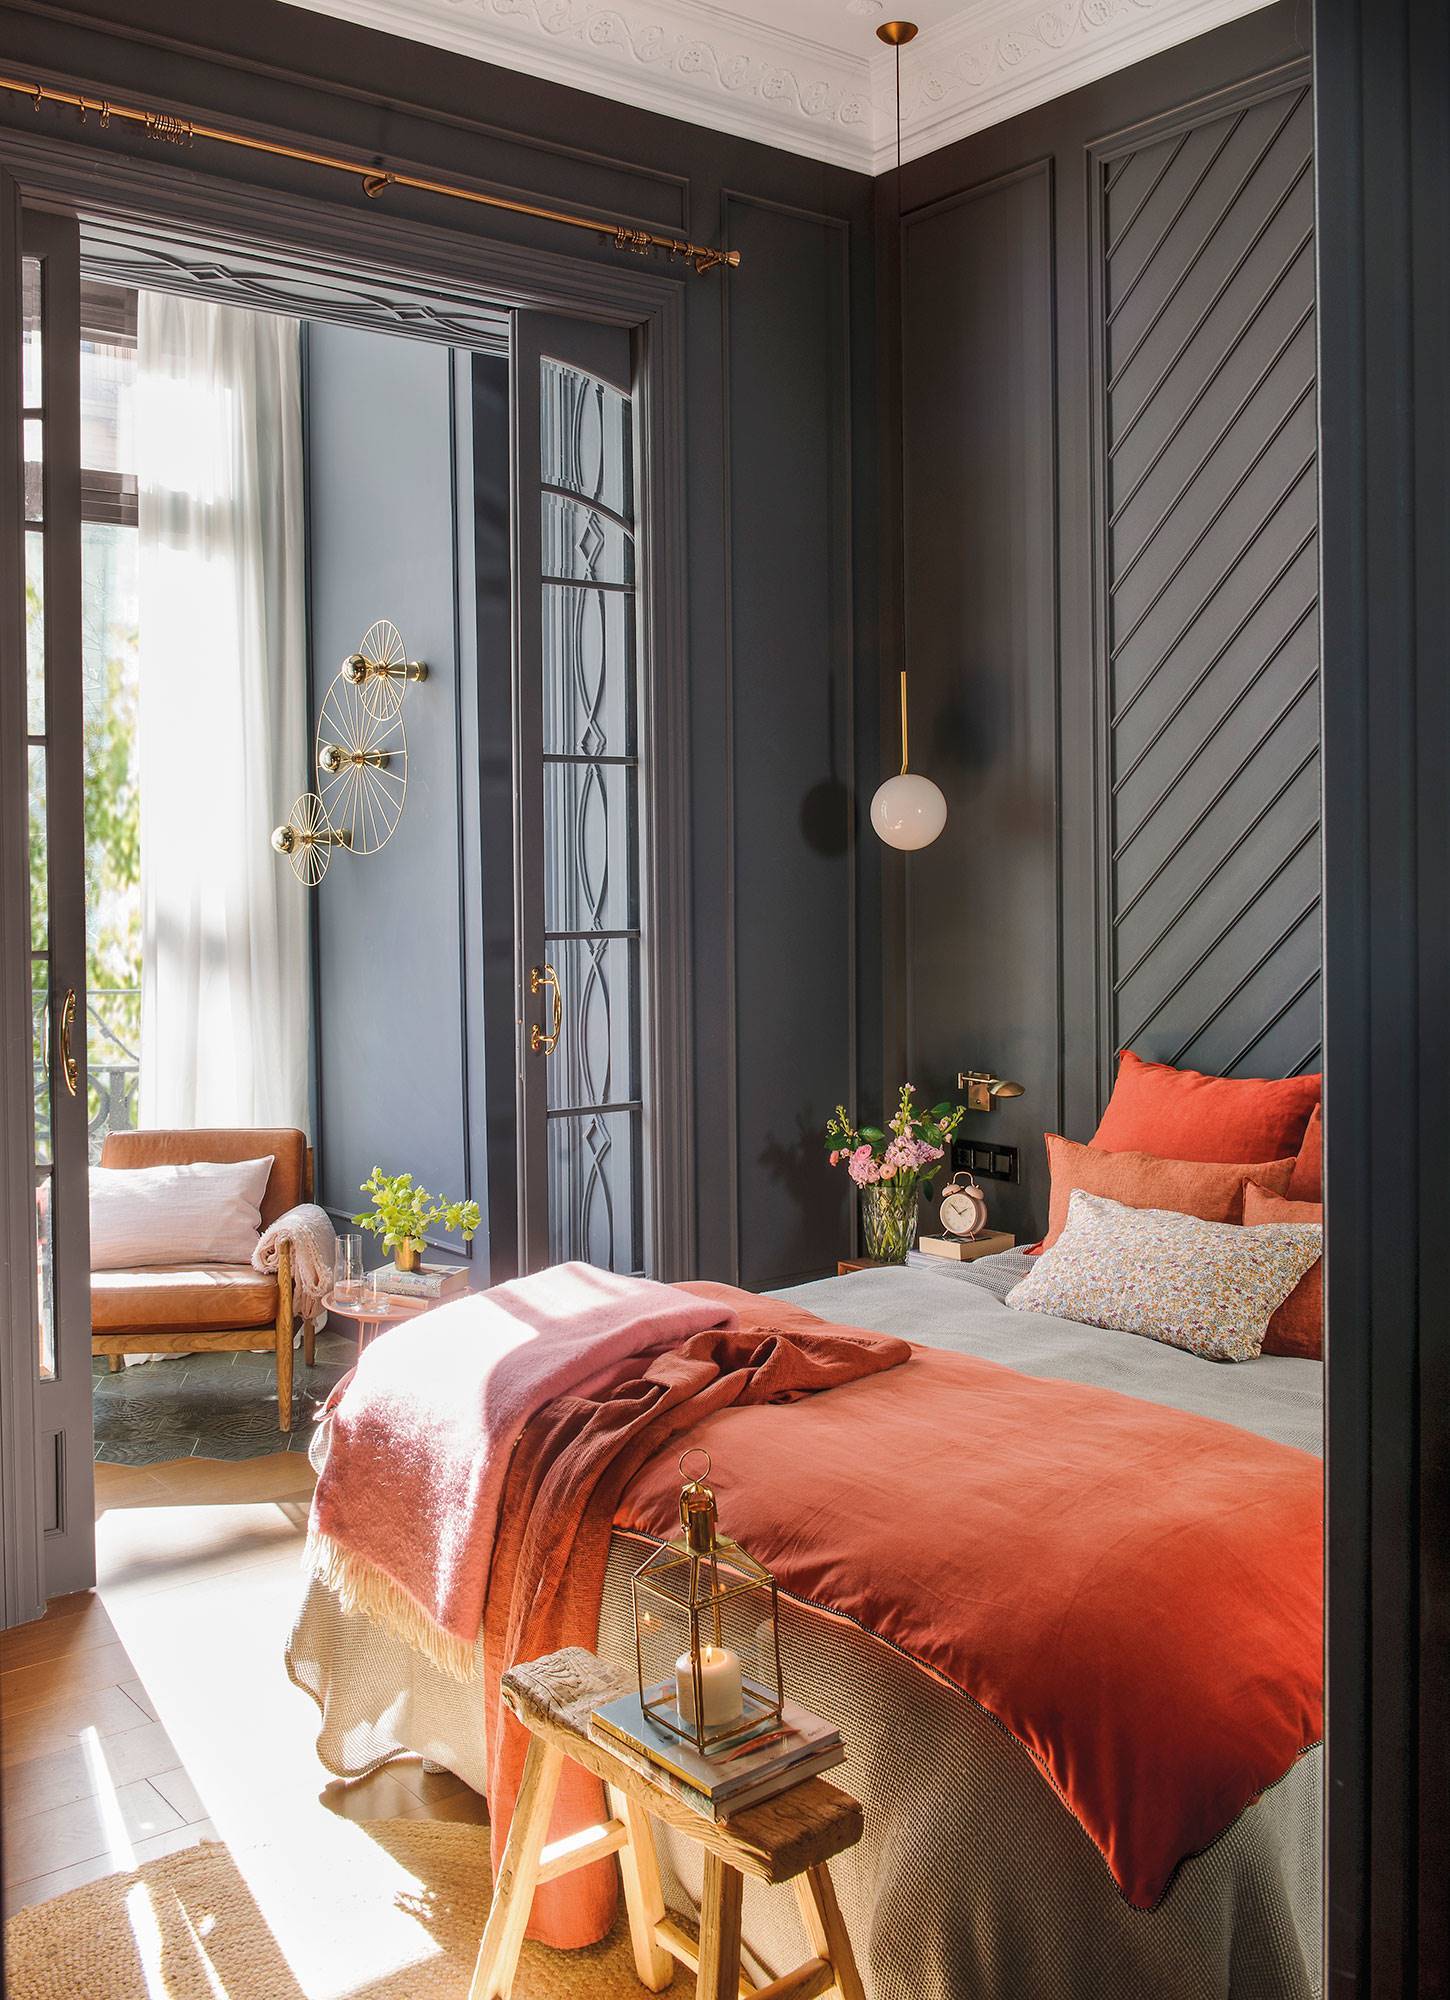 Dormitorio con pared del cabecero en color gris y con molduras en espiga.